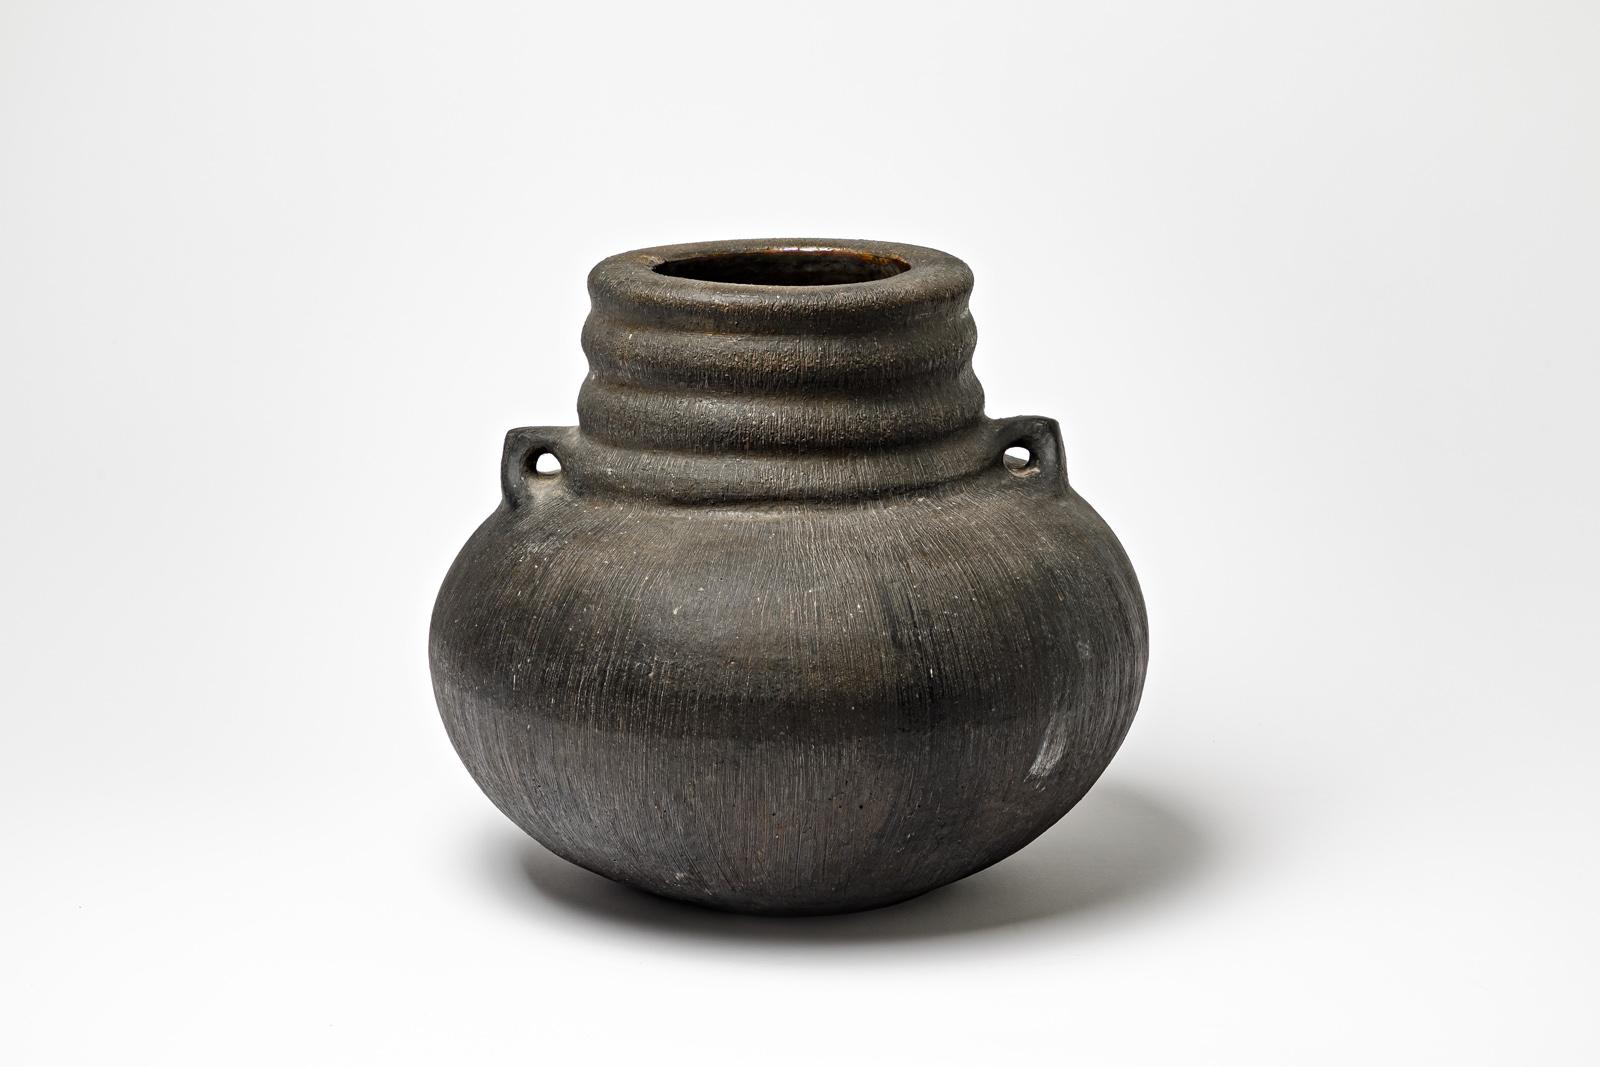 Grand vase en céramique émaillée noire de Gisèle Buthod Garçon.
Raku a tiré. 
Monogramme et signature de l'Artistics sous la base. 
Vers 1980-1990. 
Pièce unique.
H : 12.6' x 12.6' pouces.